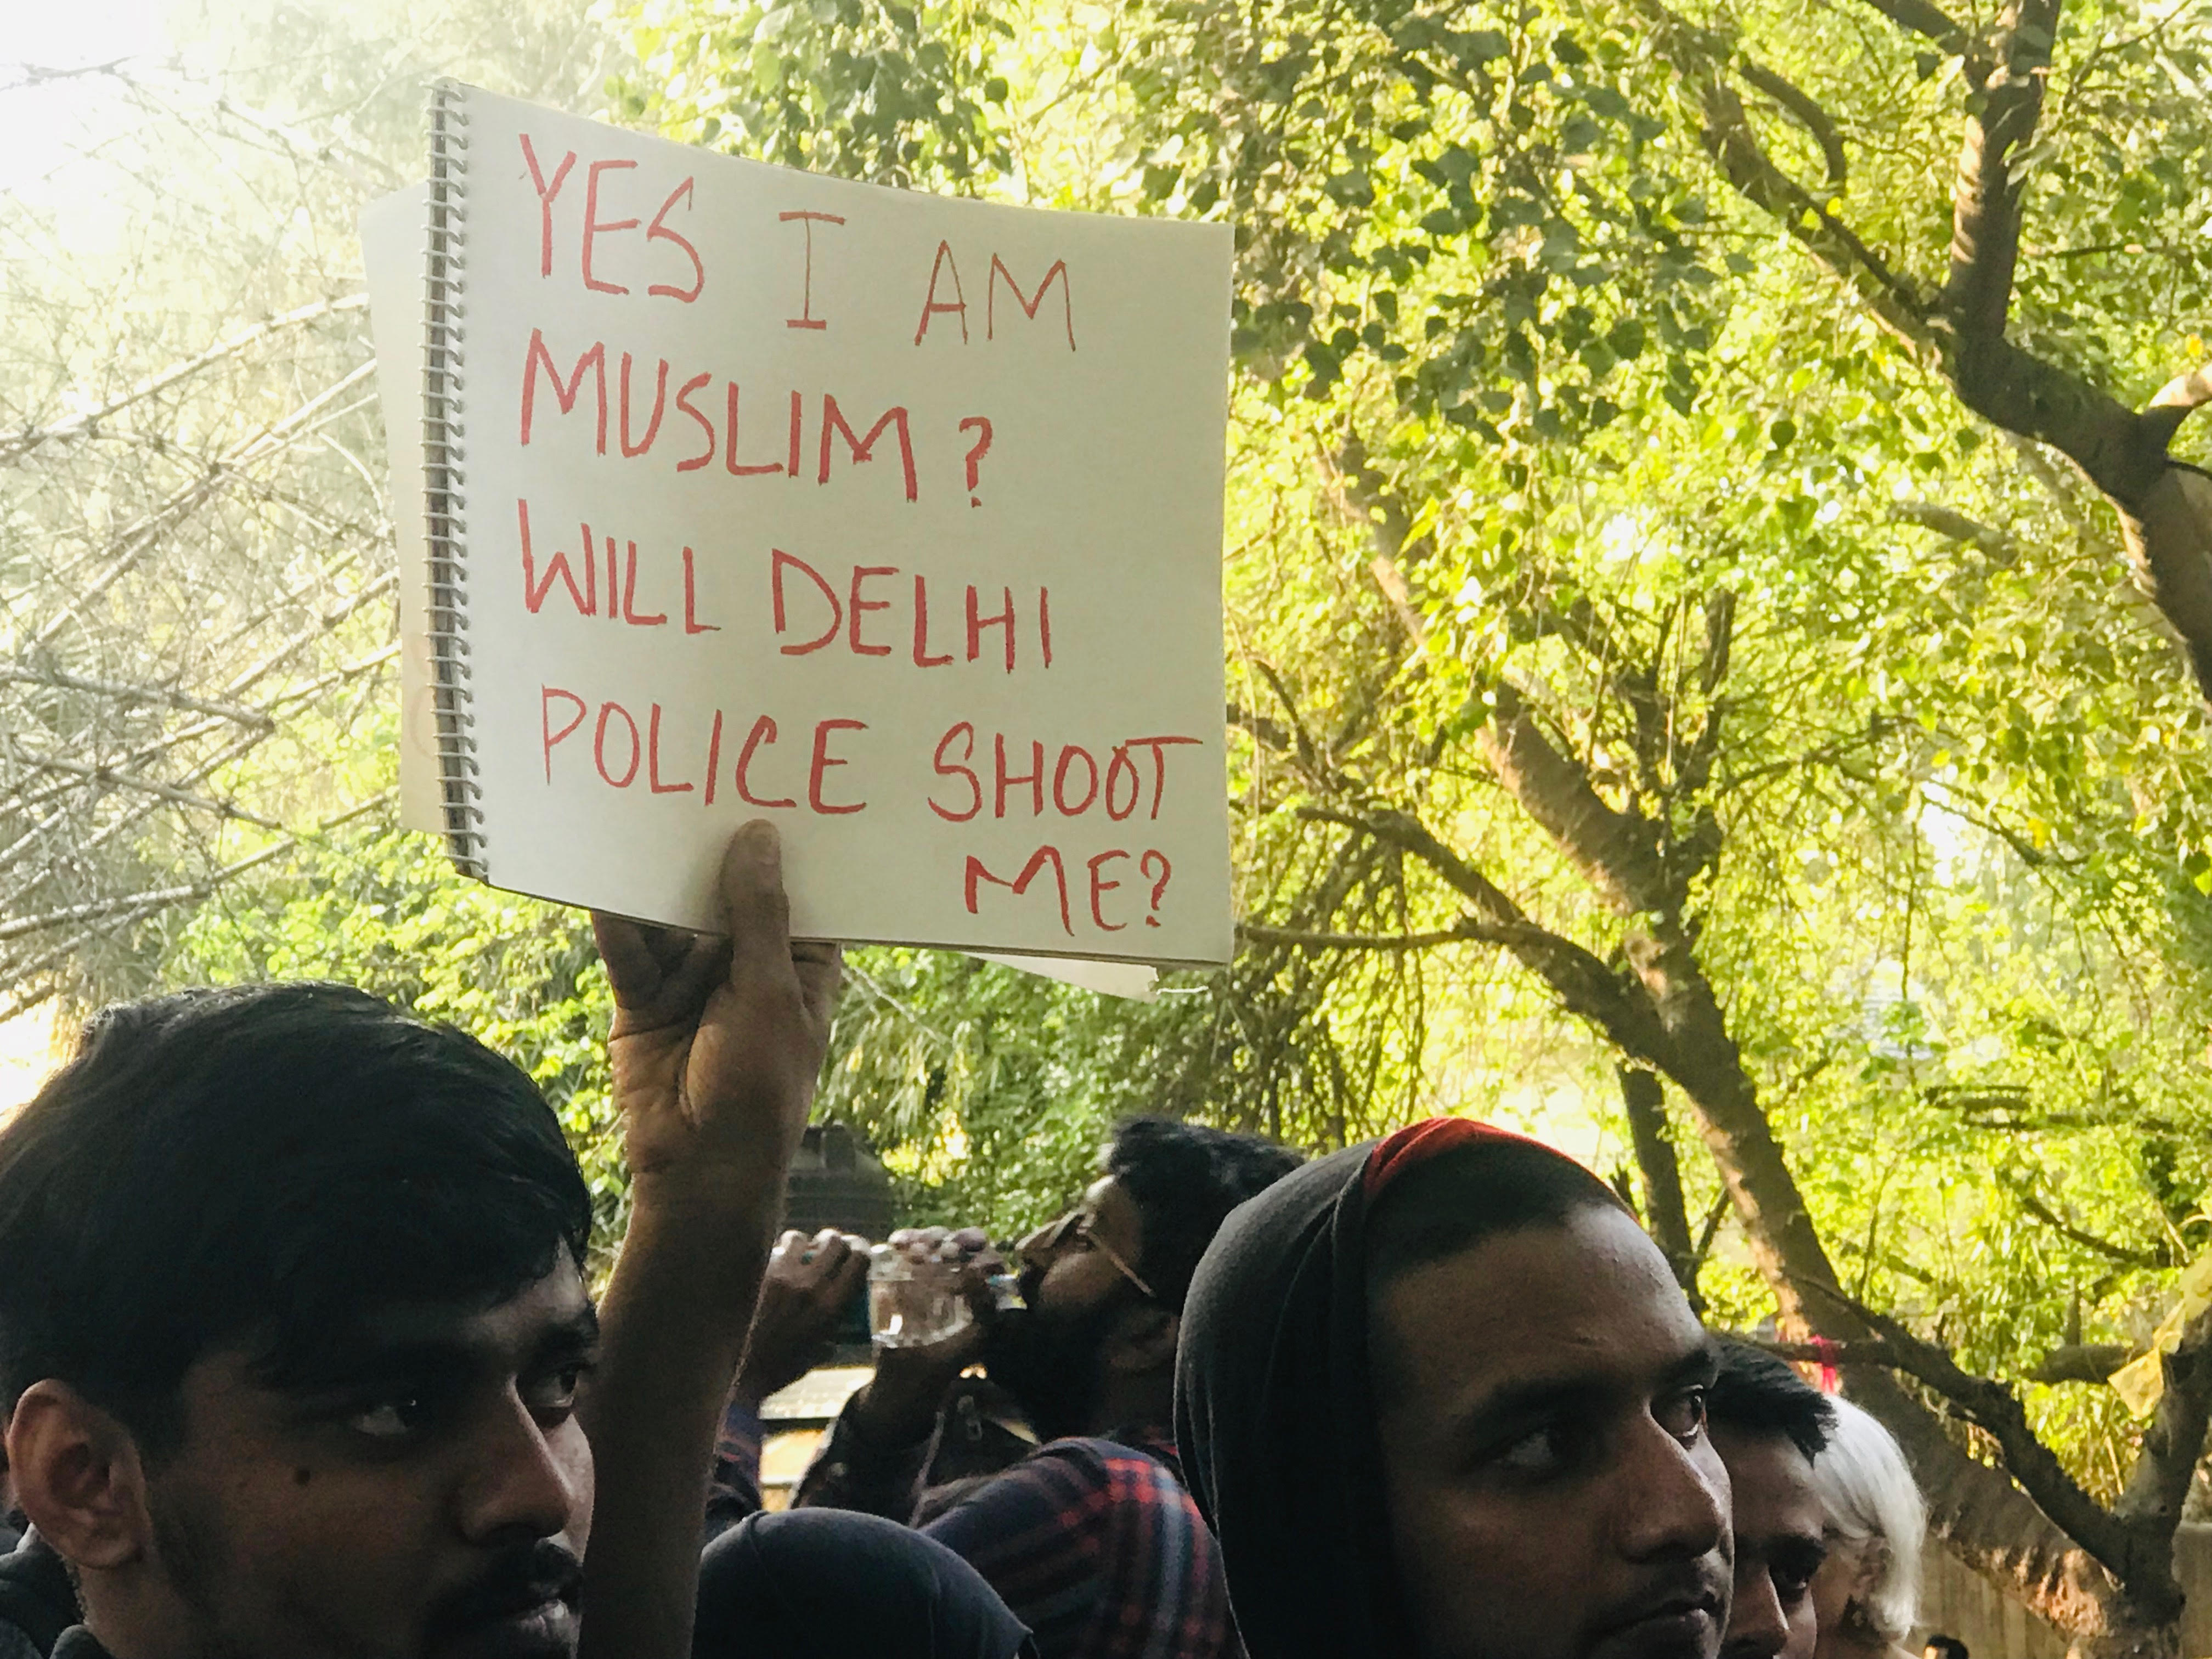 Delhi Violence